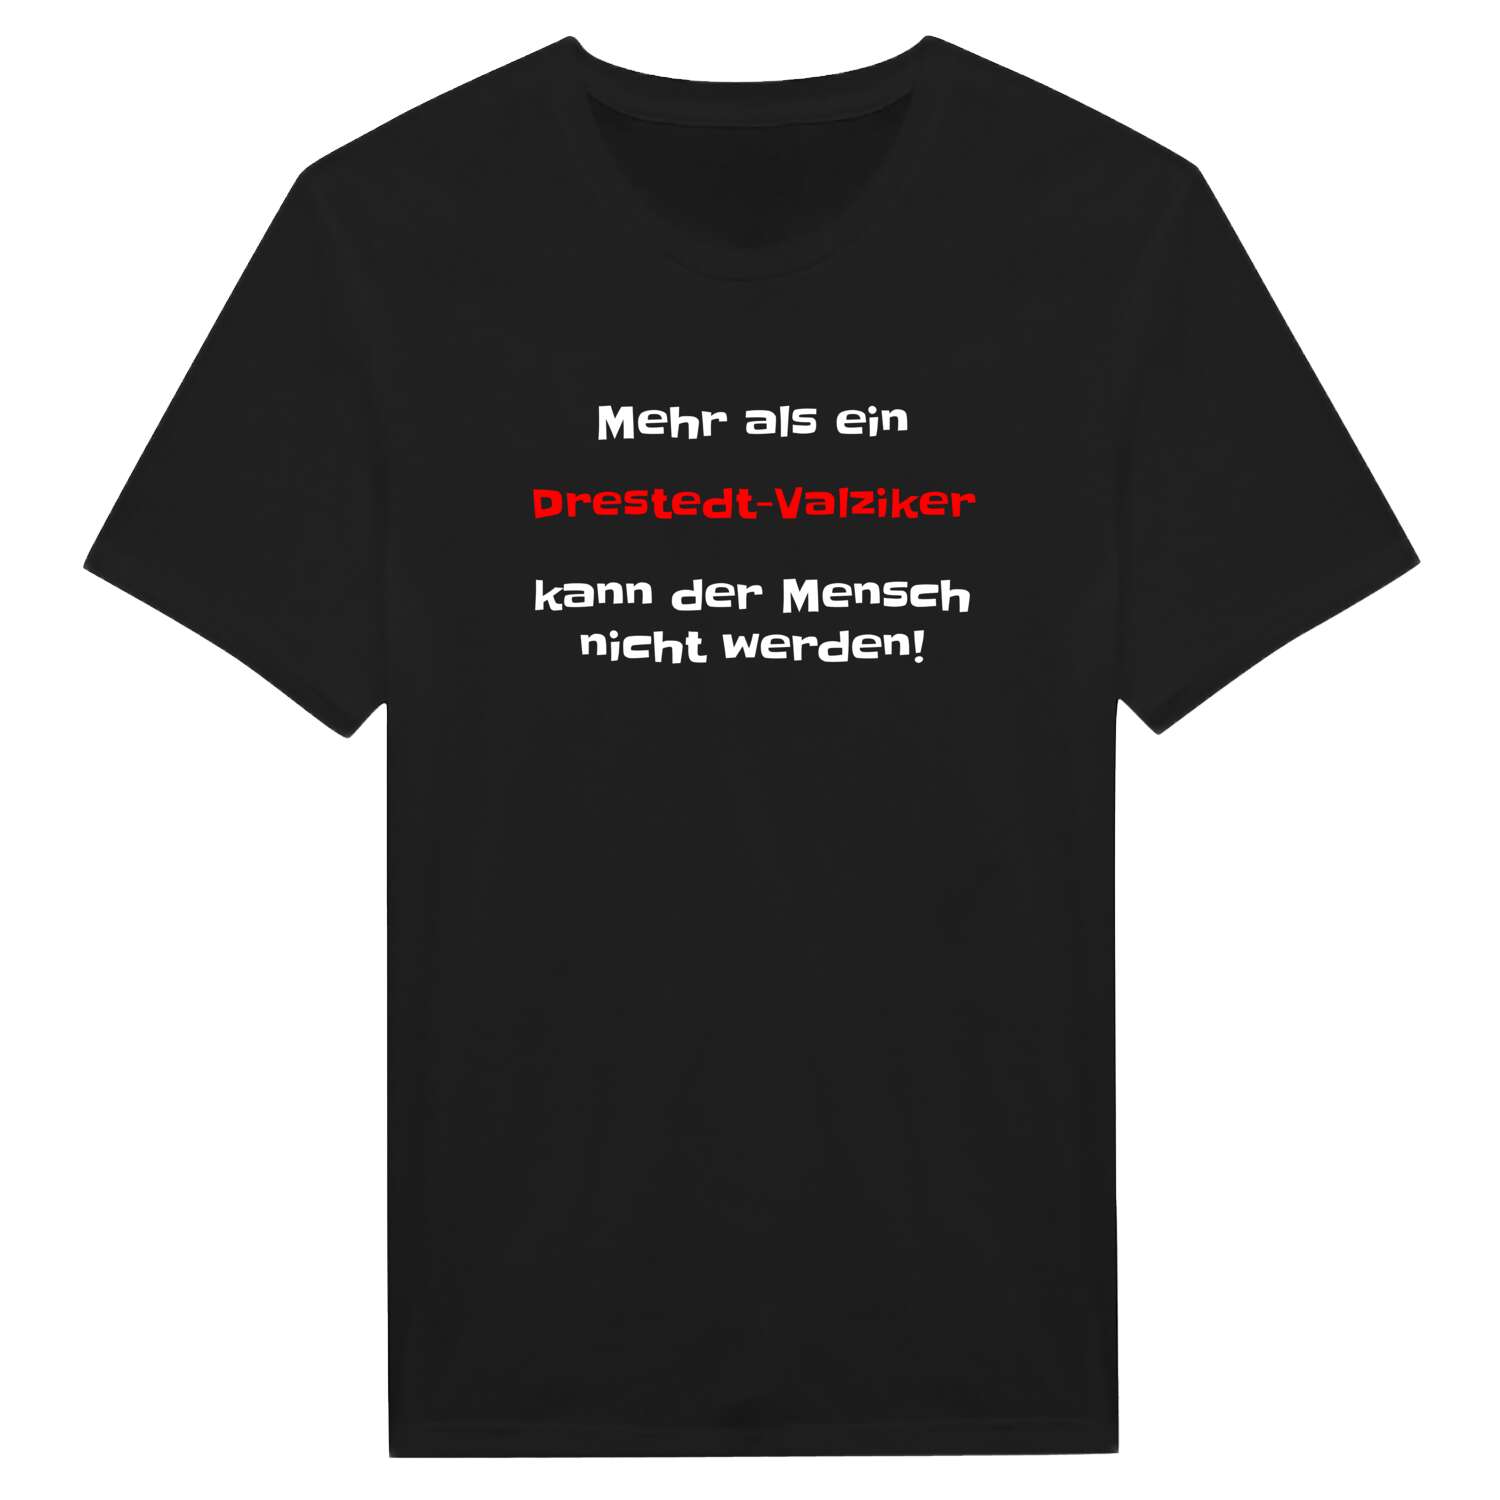 Drestedt-Valzik T-Shirt »Mehr als ein«